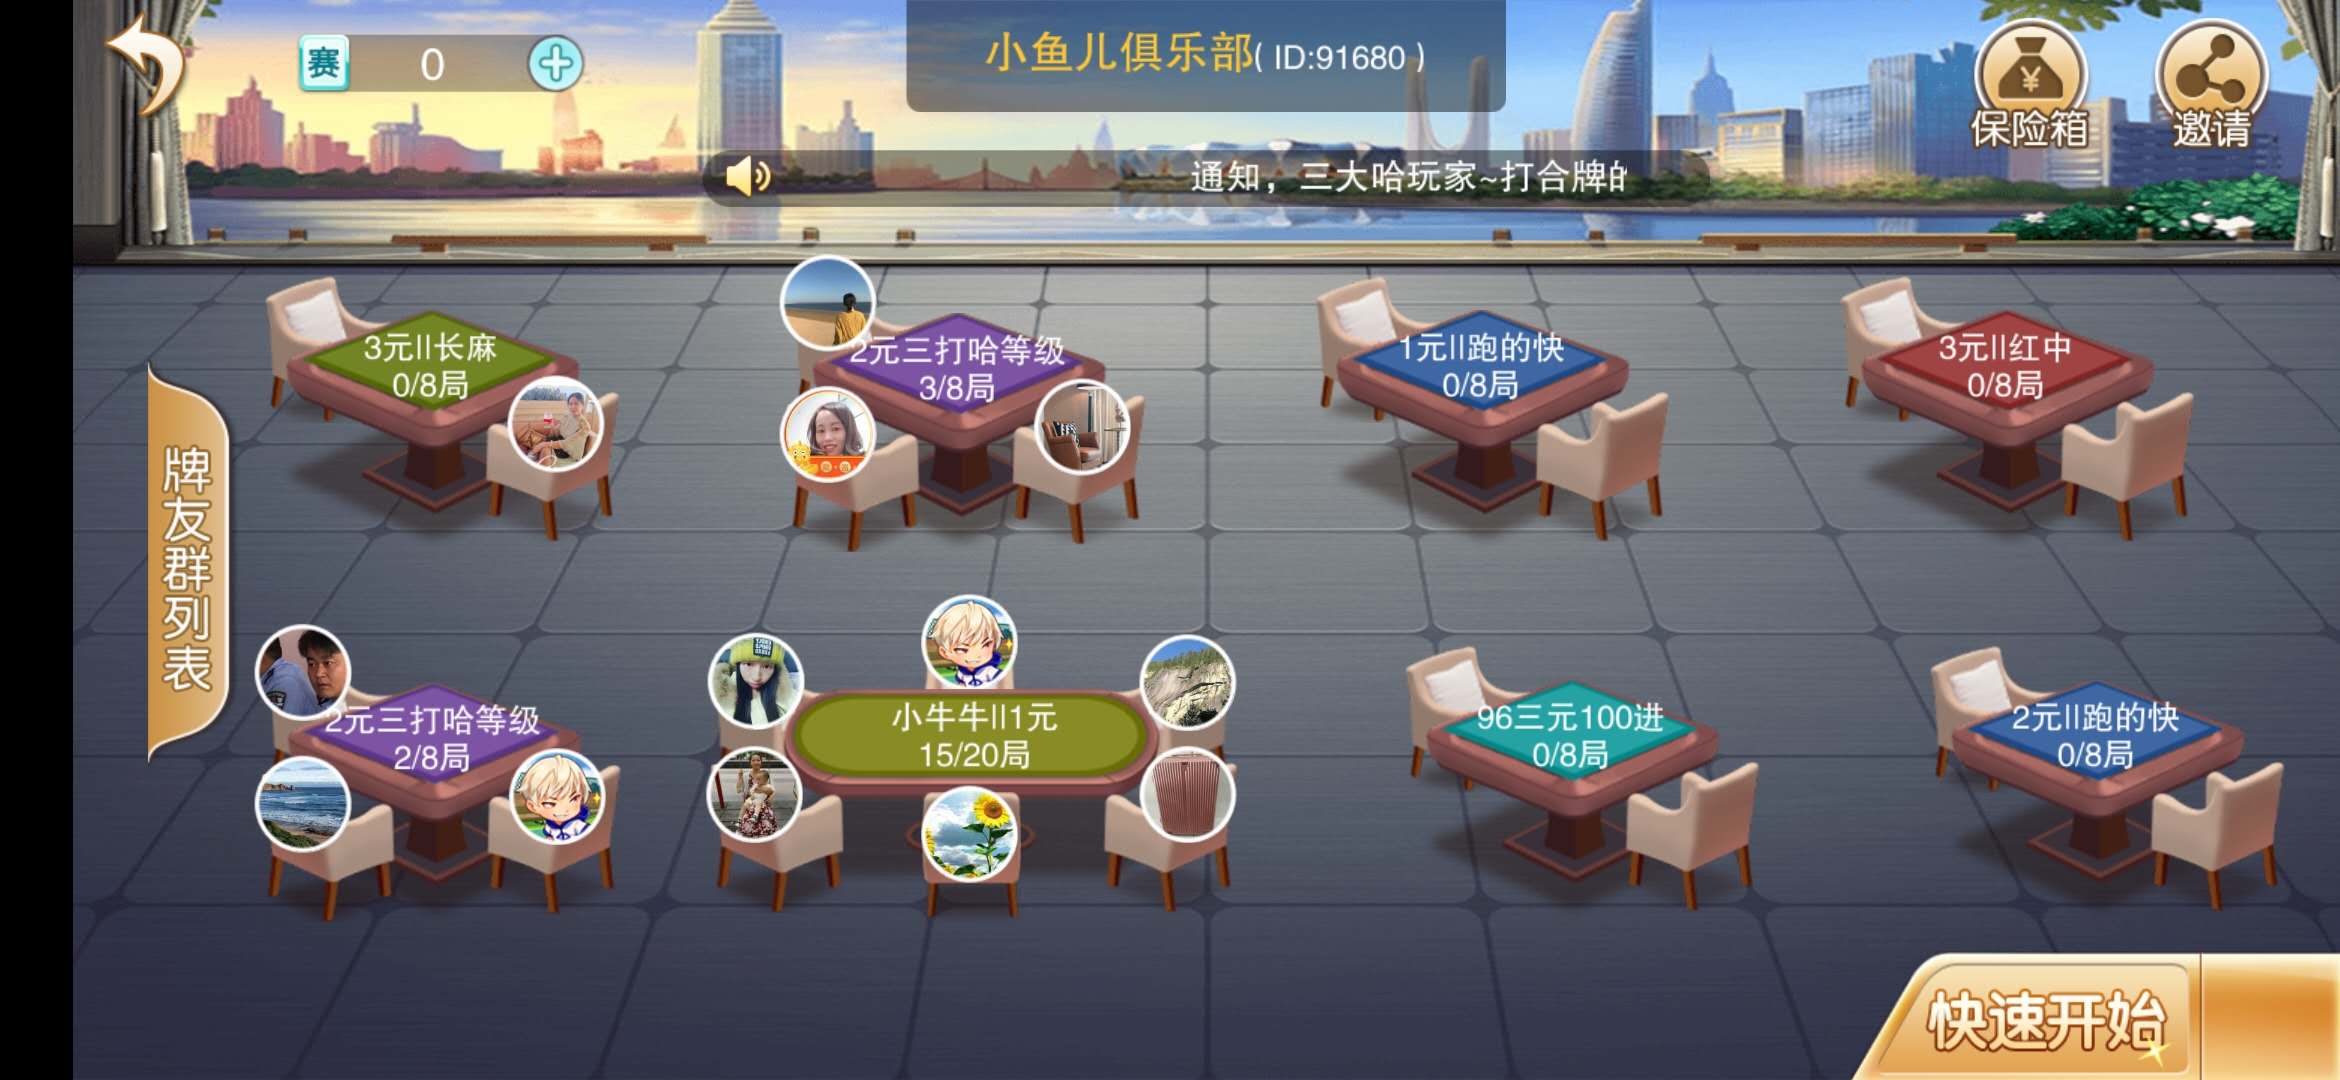 湖南郴州最爱玩的棋牌电玩城游戏是什么